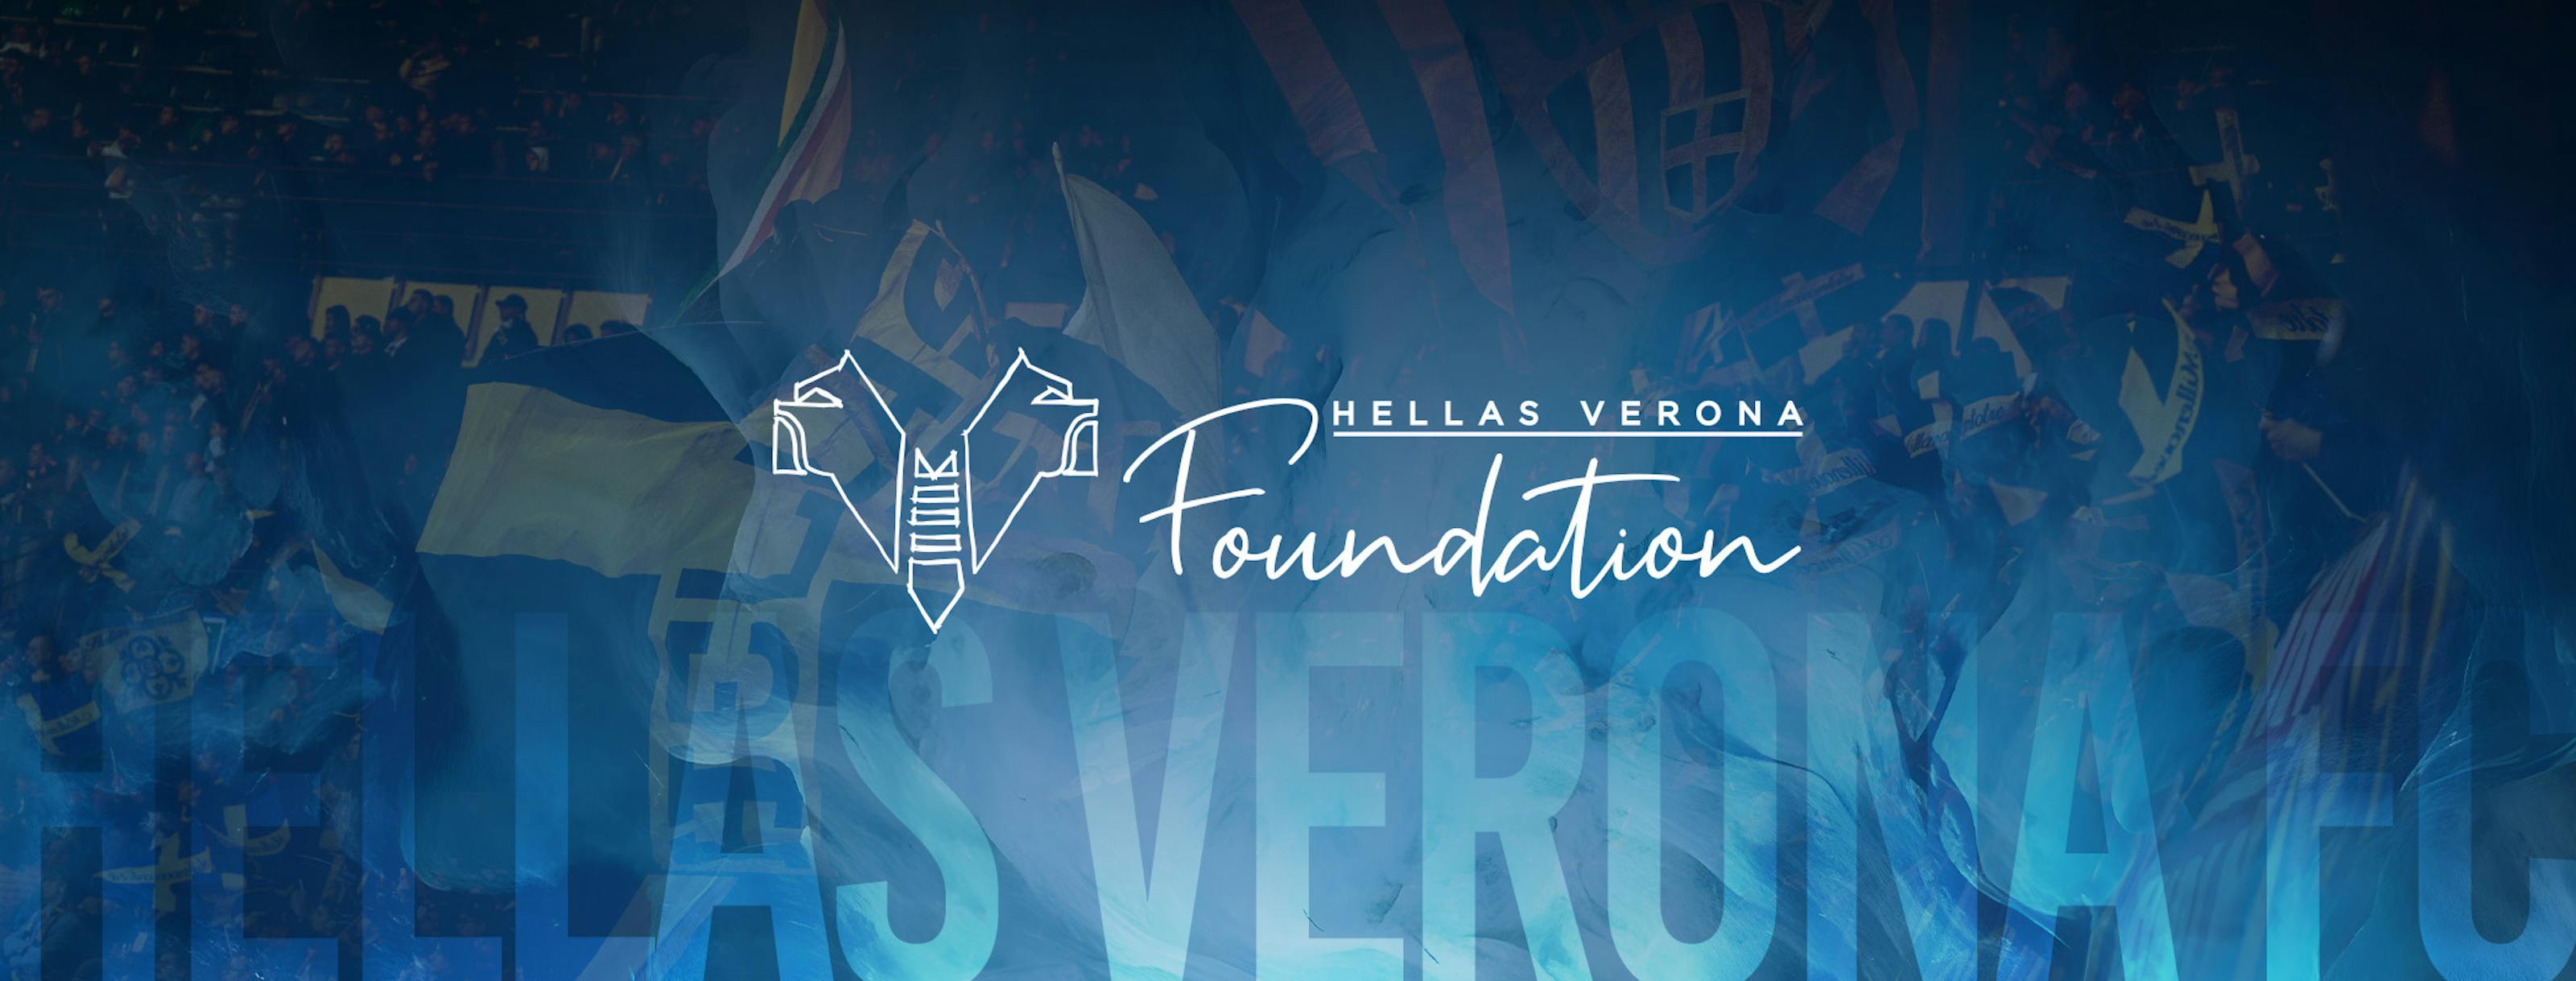 Hellas Verona header image